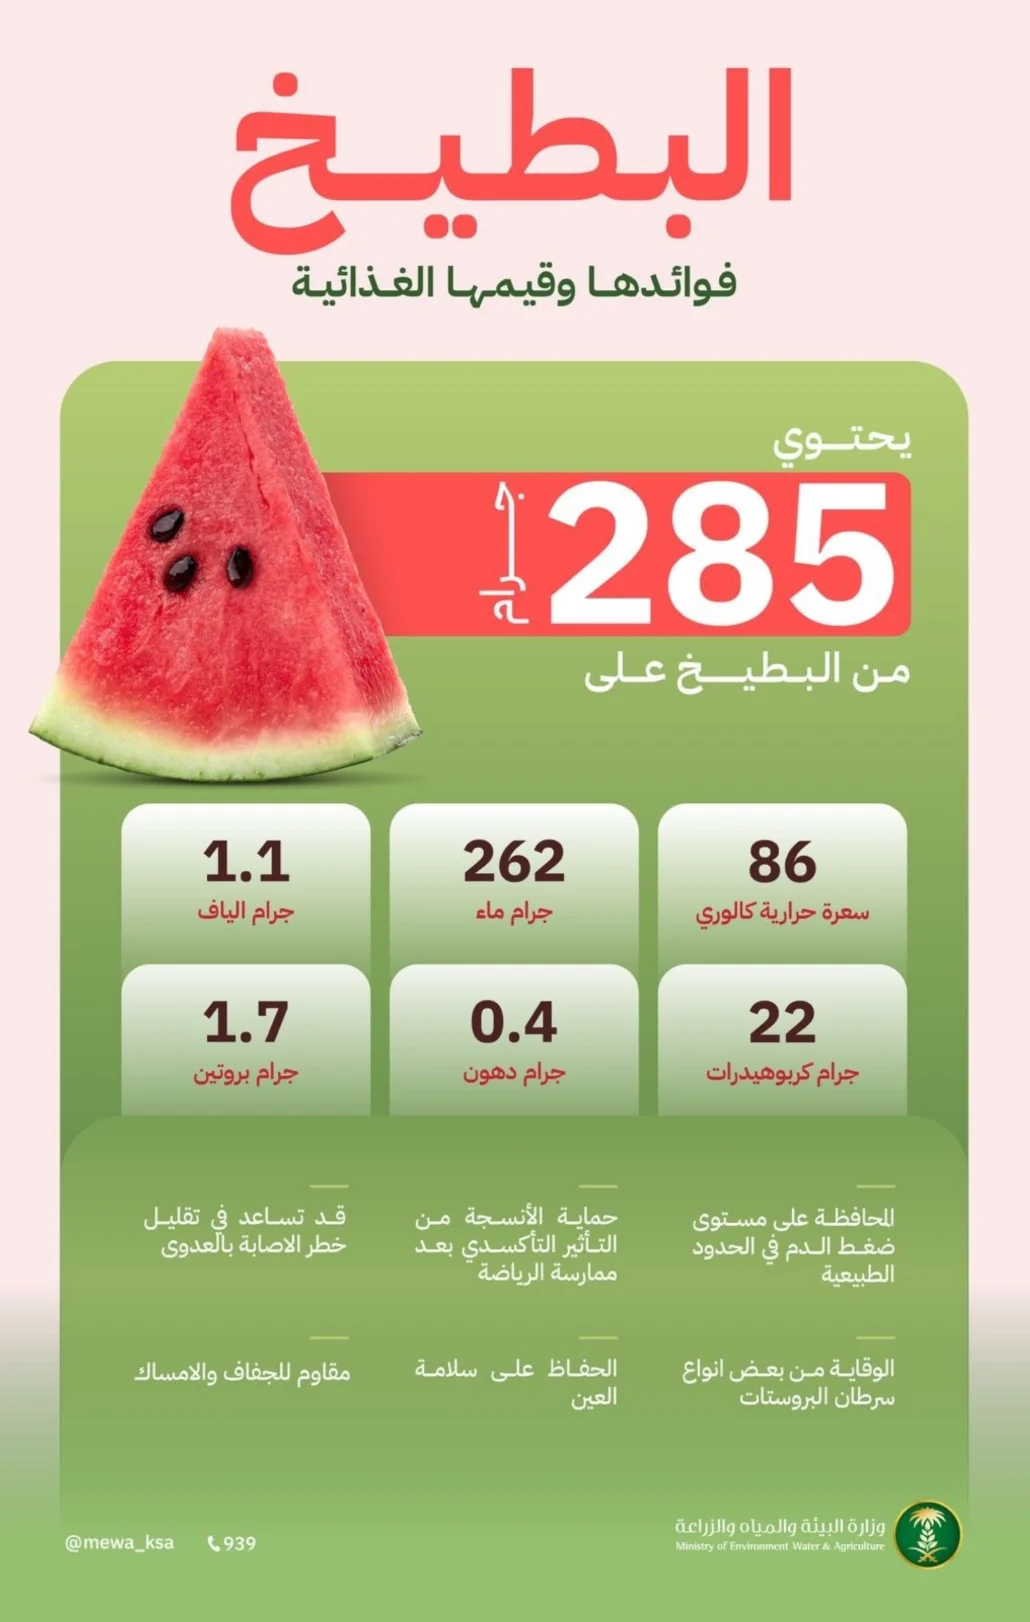 (285) جرامًا من البطيخ يحتوي على (262) جرامًا من الماء